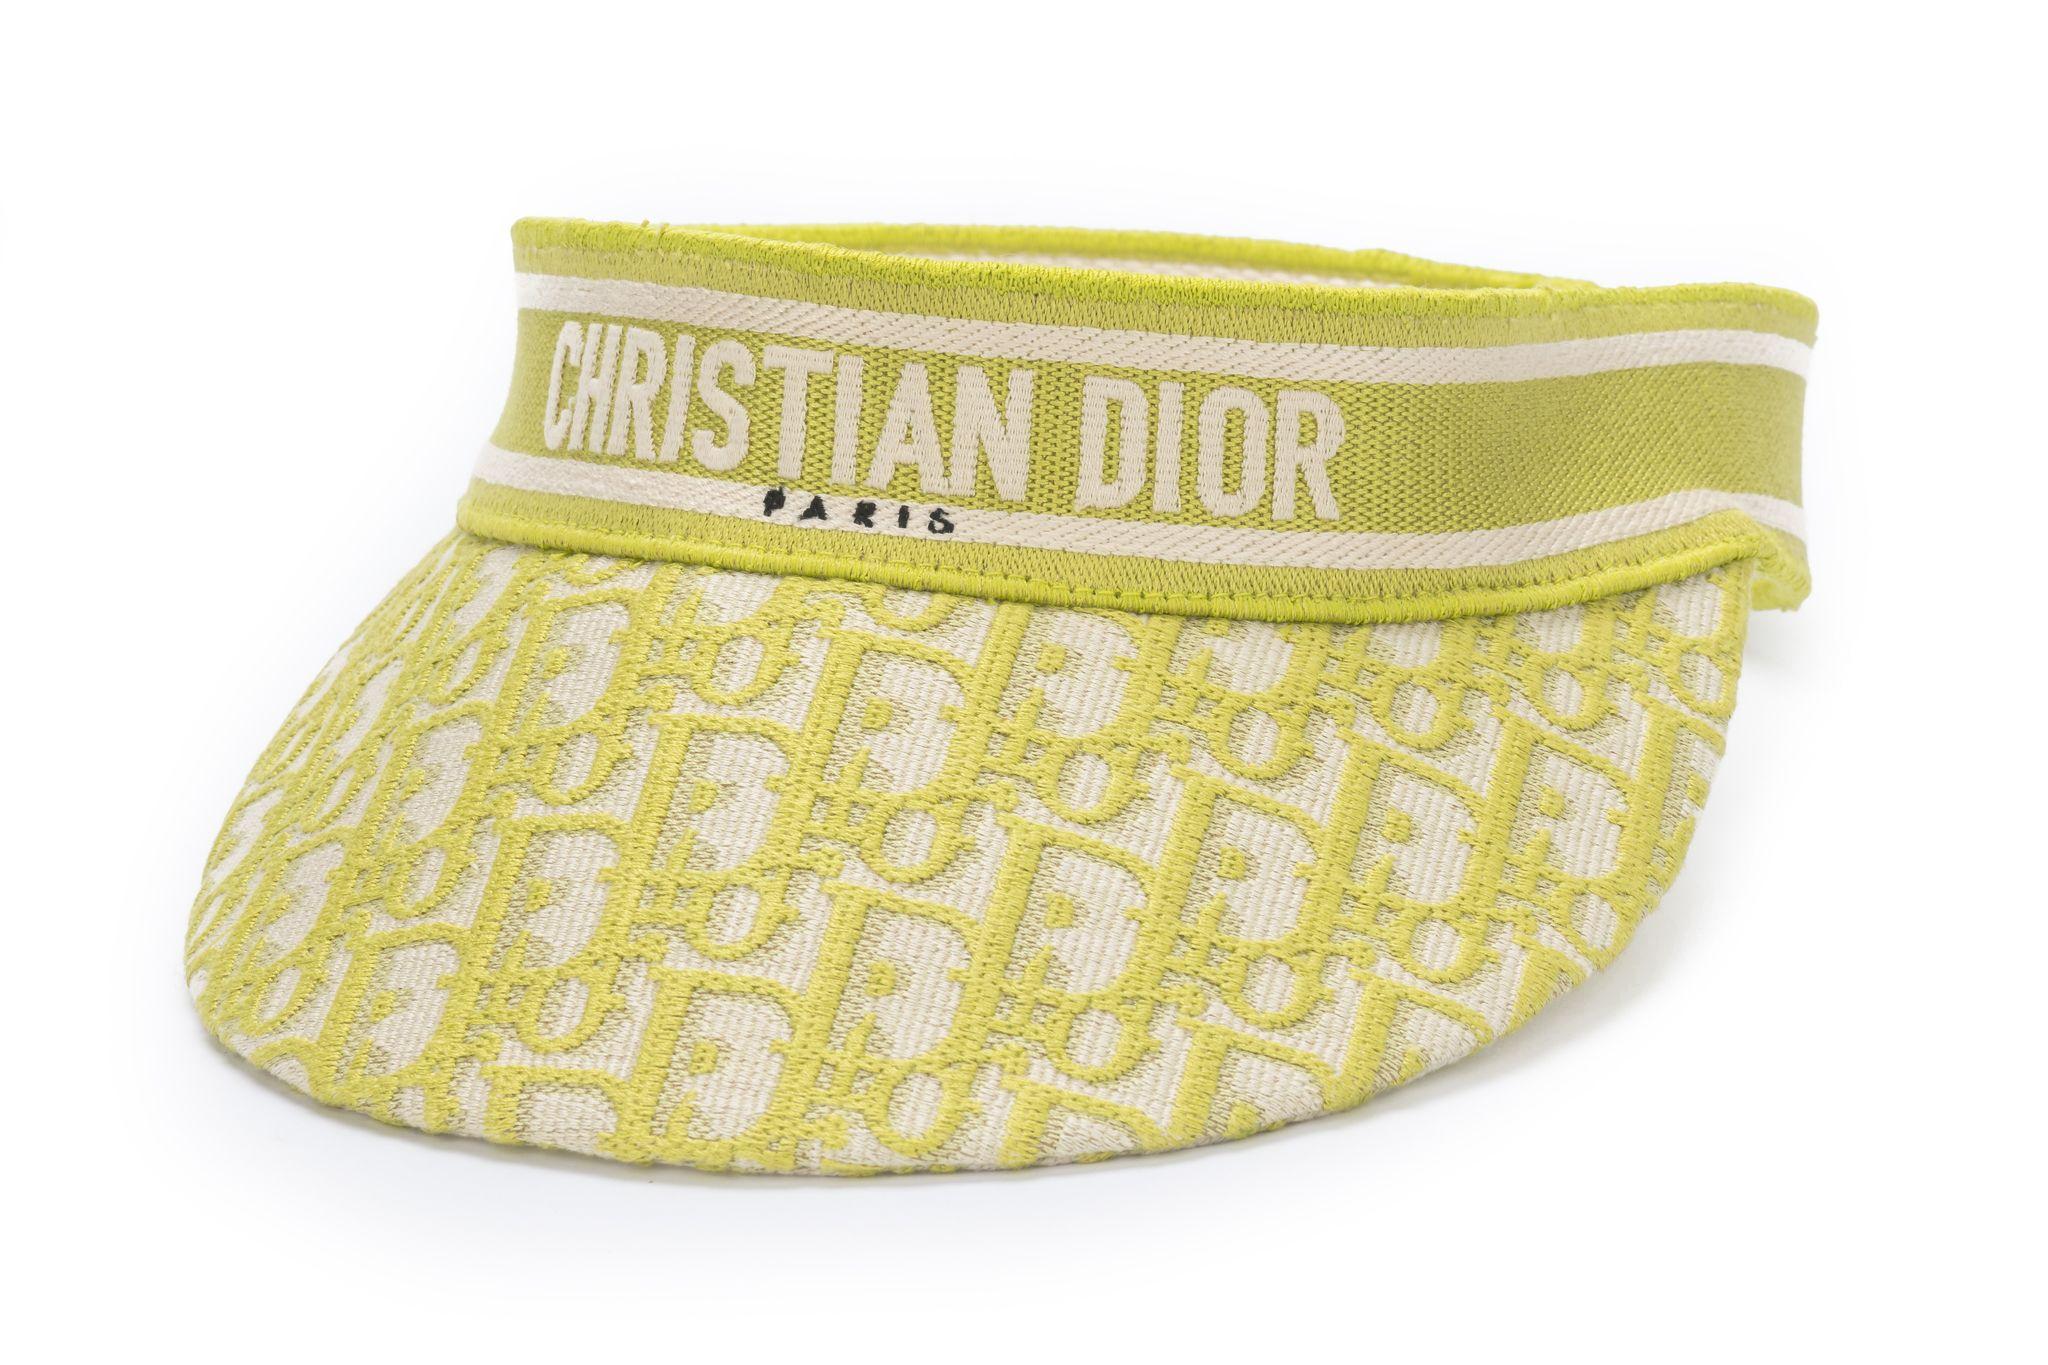 Limone Christian Dior Schräges Visier mit Motiv. Mit einem farblich abgestimmten, bestickten Band mit dem Schriftzug 